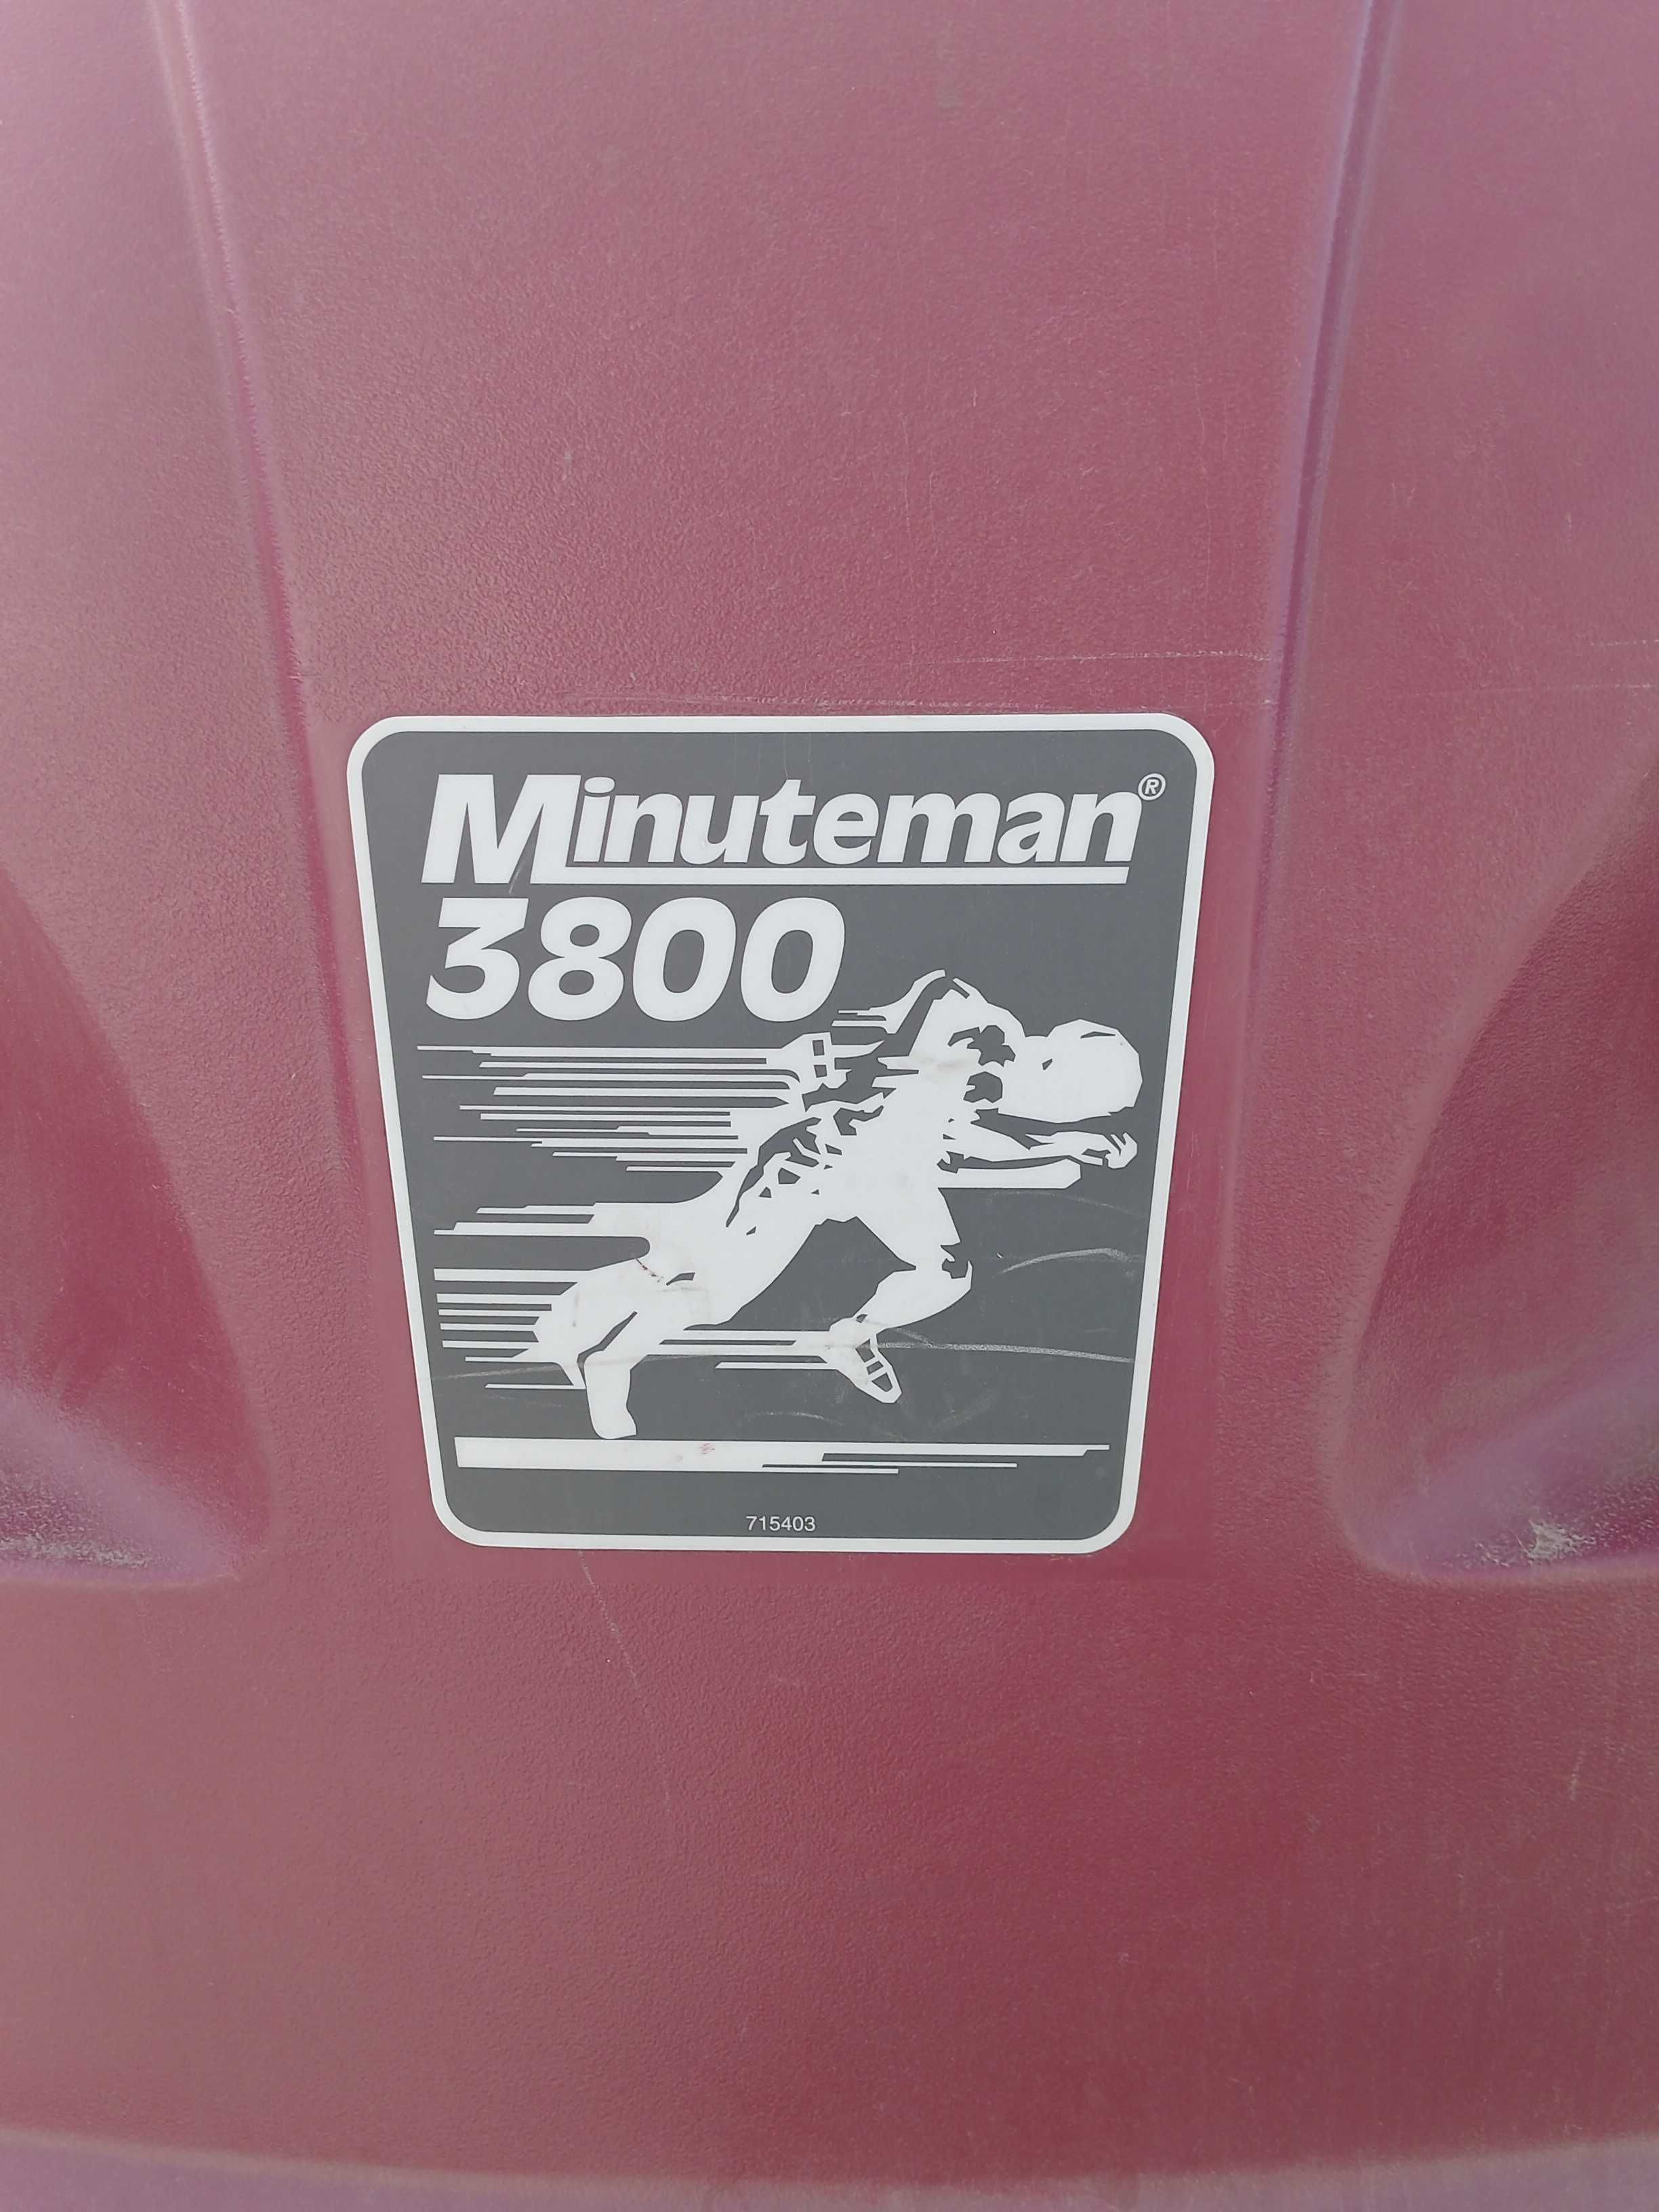 Minuteman 3800 maszyna sprzątająca.